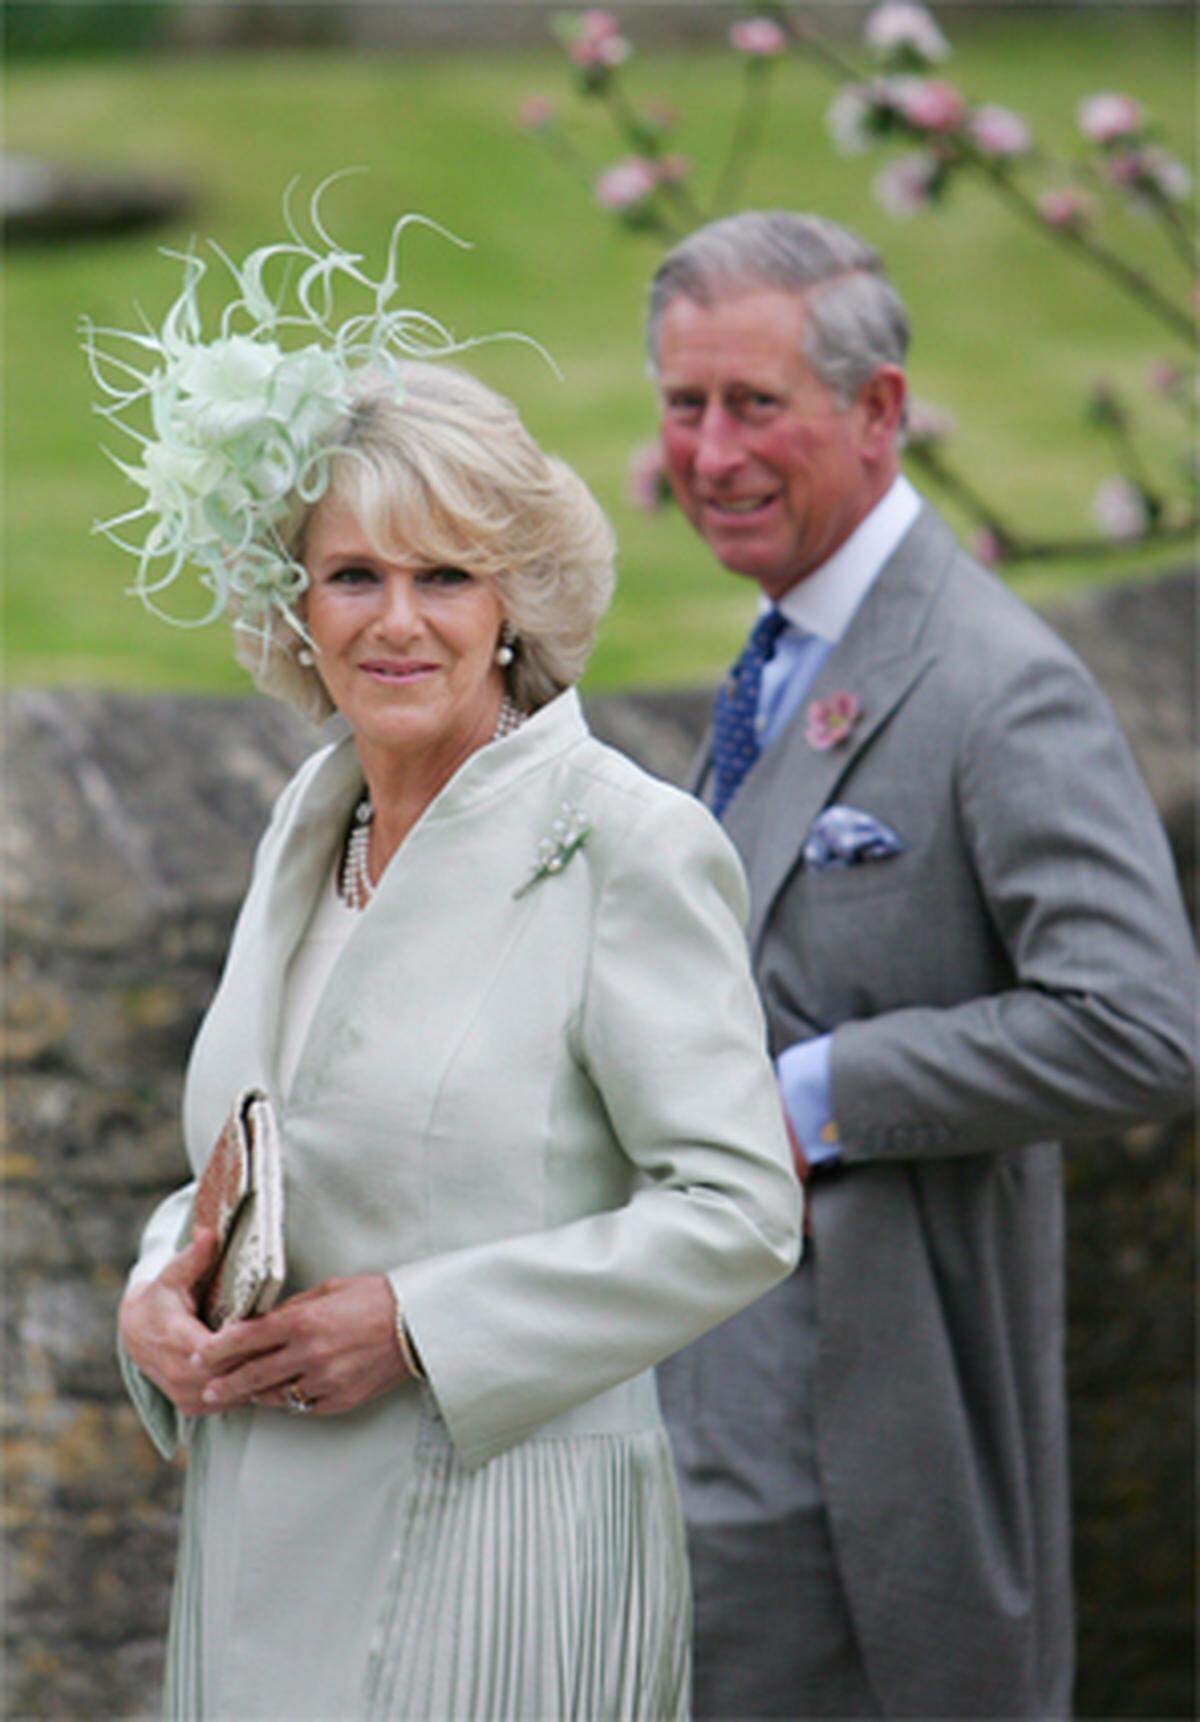 Prinz Charles heiratet seine langjährige Freundin Camilla Parker Bowles. 24 Jahre nach seiner umjubelten Hochzeit mit Lady Diana Spencer - und 19 Jahre nach ihrer Scheidung - verläuft die zweite Eheschließung des britischen Thronfolgers ohne Glanz und Glamour im Standesamt von Windsor.